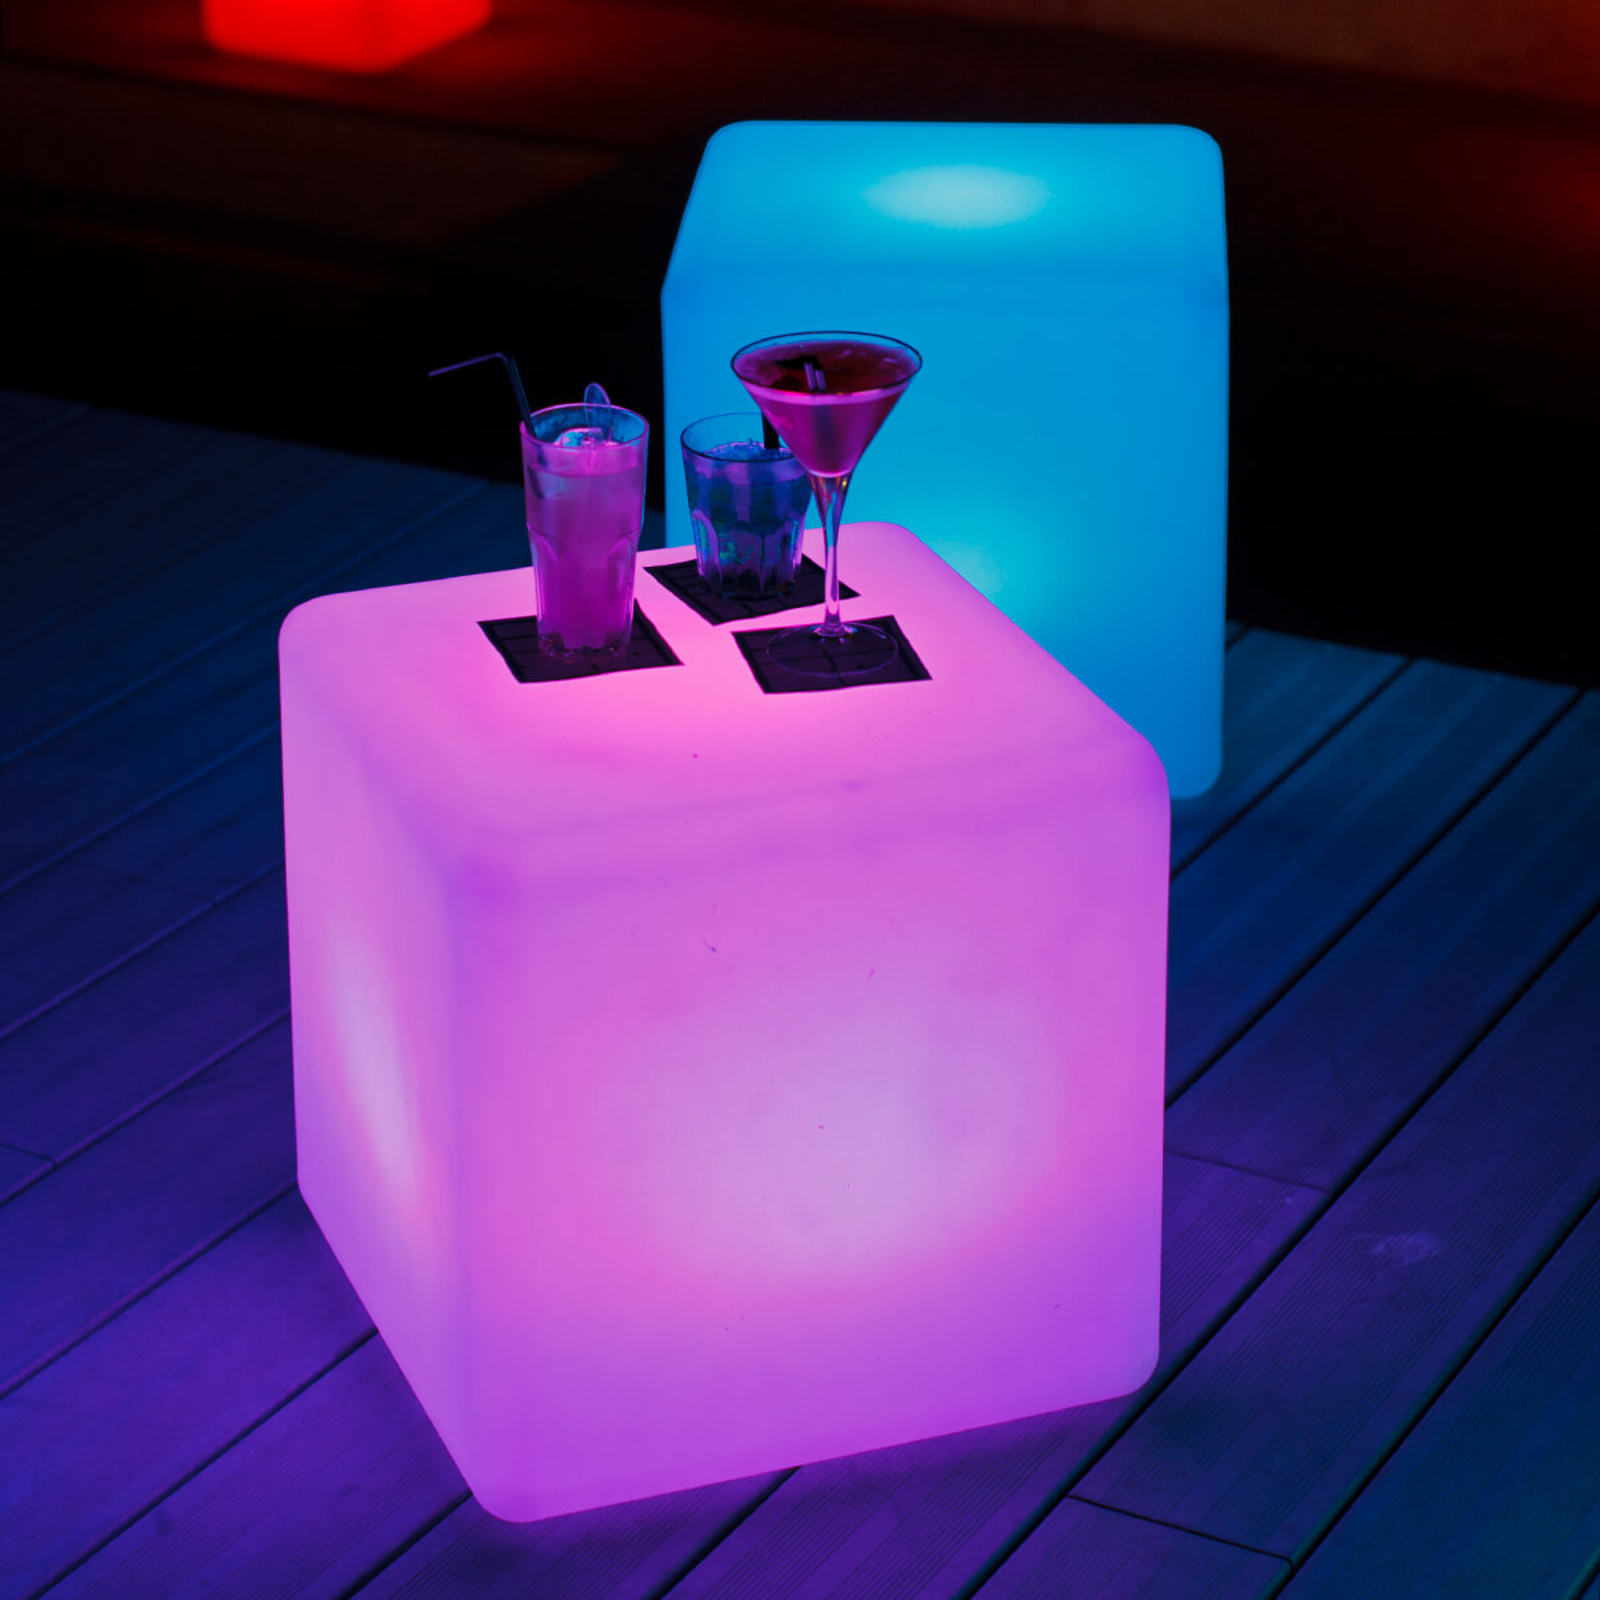 Cube - svítící kostka do exteriéru